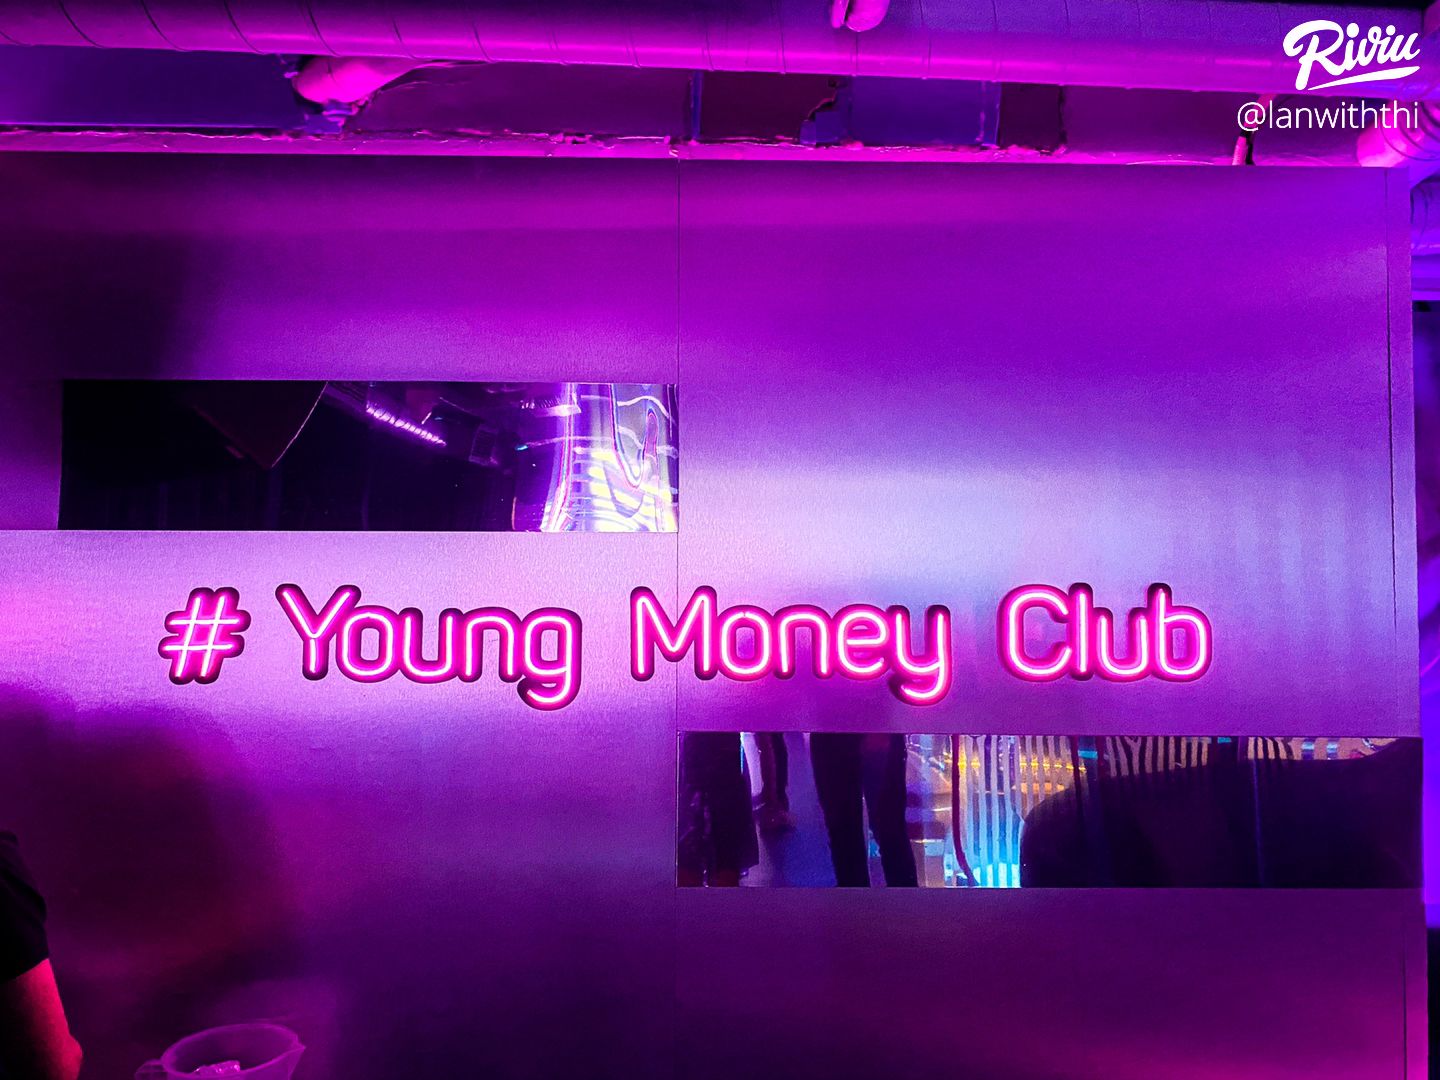 YMC - Young Money Club 150/9 Nguyễn Trãi Q1 